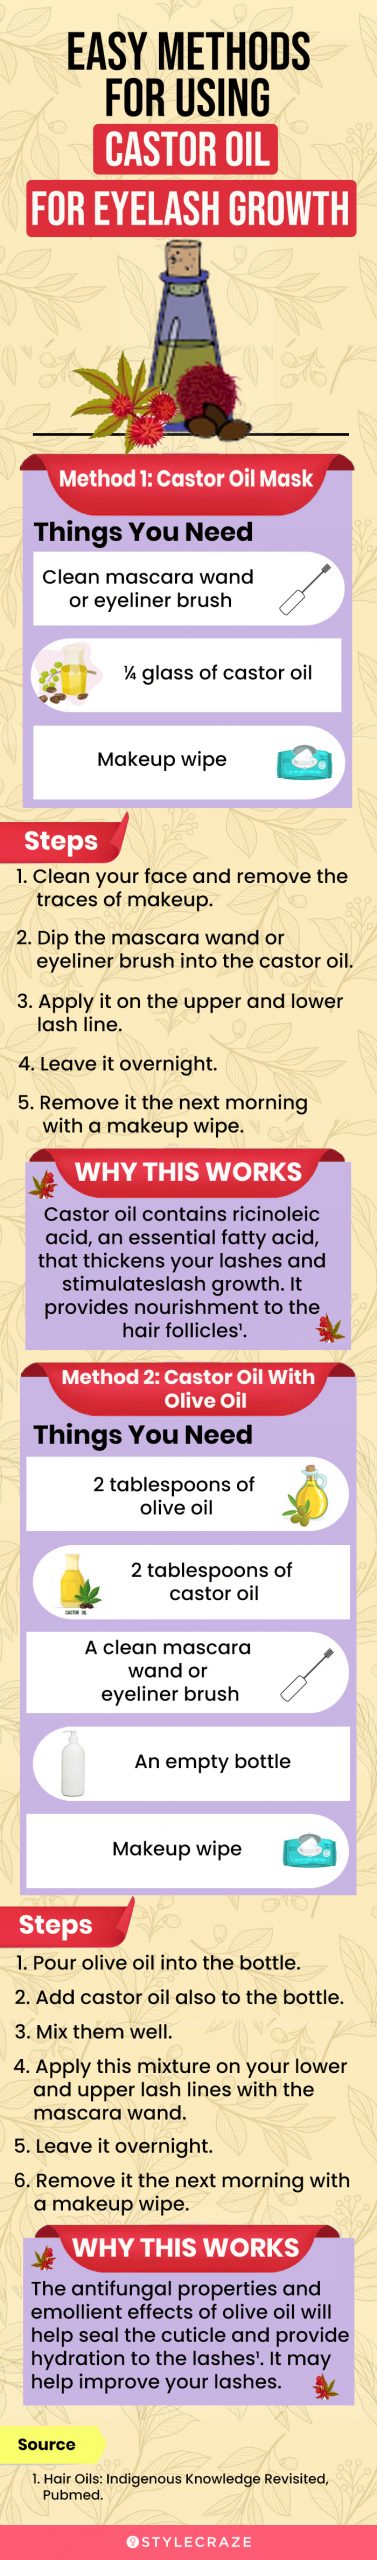 easy methods for using castor oil for eyelash growth [infographic]